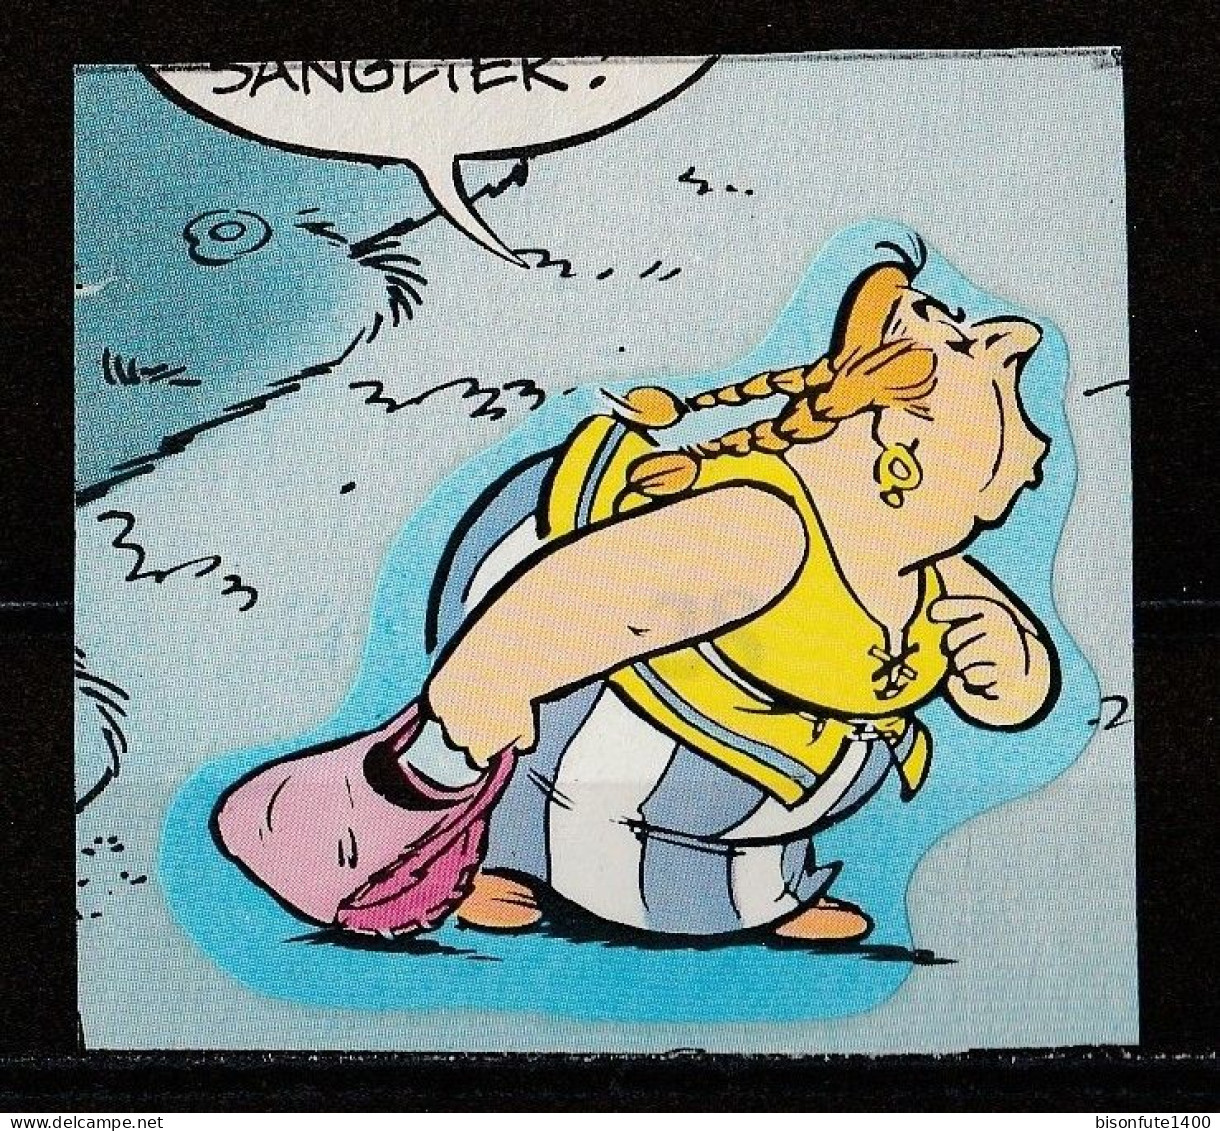 ASTERIX : Occasion : Vignette Autocollante N° 28 De L'album PANINI "Astérix" De 1987. ( Voir Description ) - Edition Française